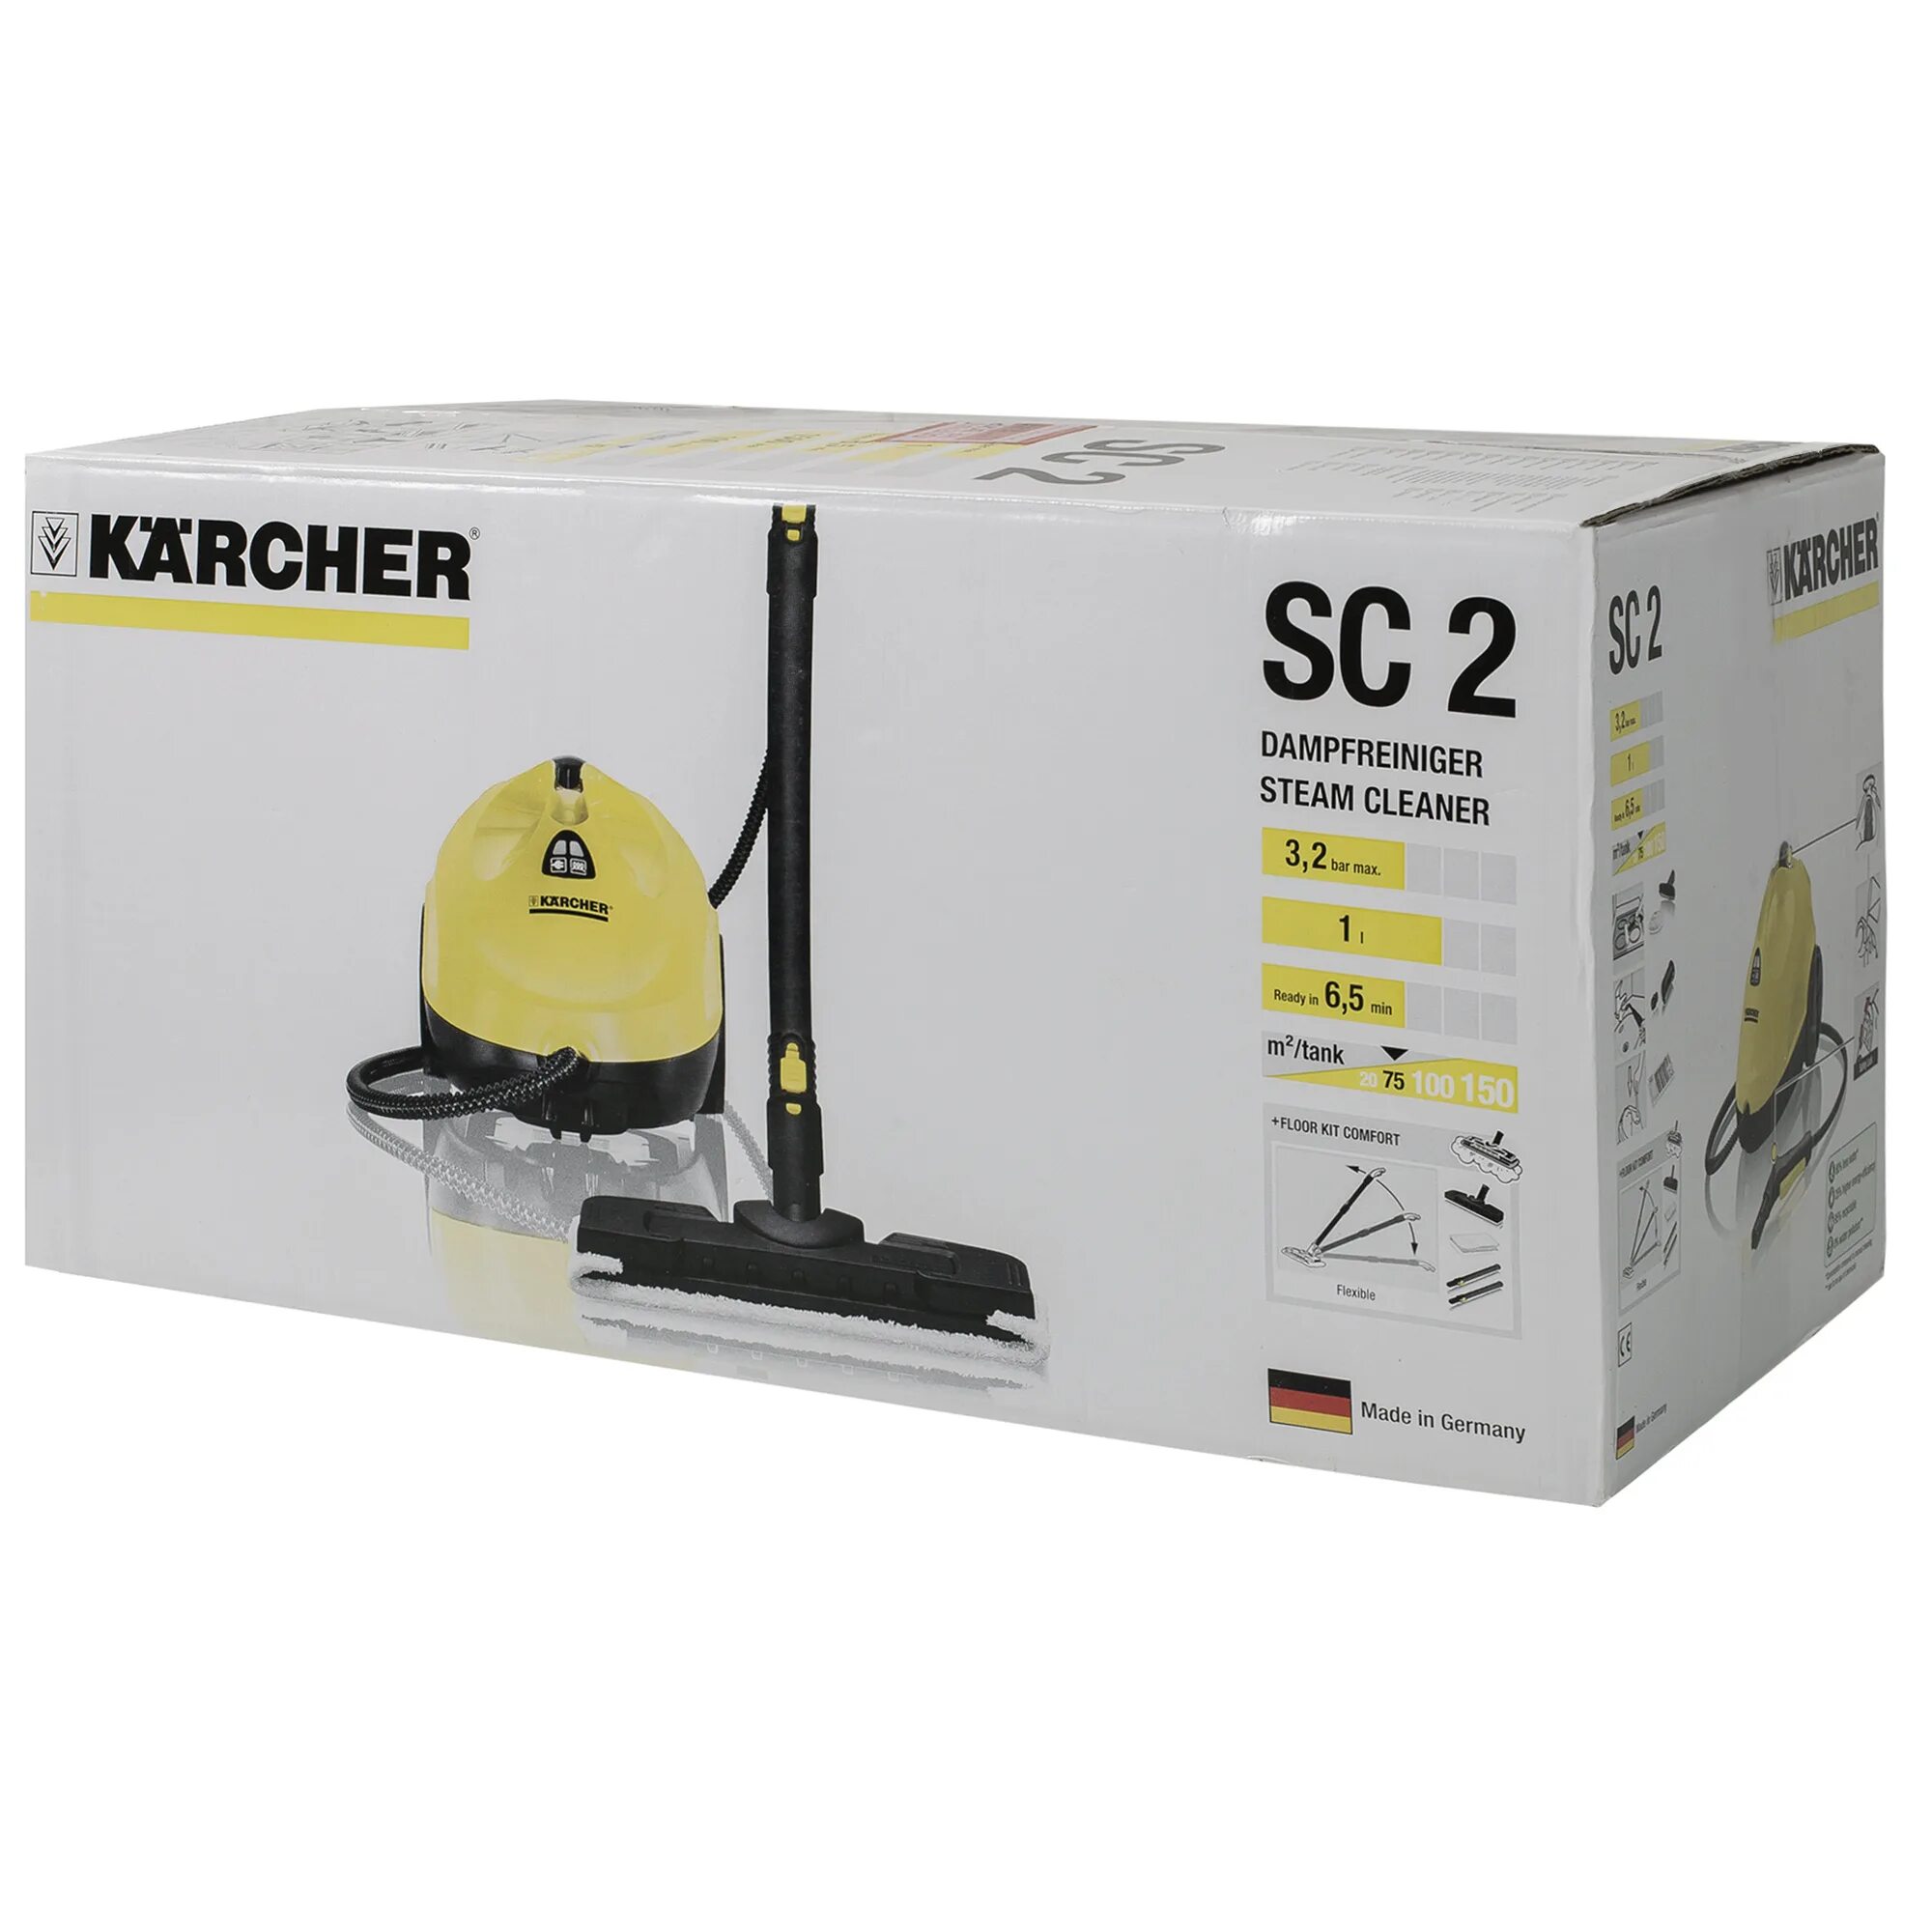 Пароочиститель Karcher SC 2 EASYFIX, 1500 Вт, 3.2 бар. Пароочиститель Karcher CS 2 1500вт 3,2бар. Пароочиститель Karcher SC 2. Керхер sc2 комплектация. Пароочиститель керхер sc2 купить